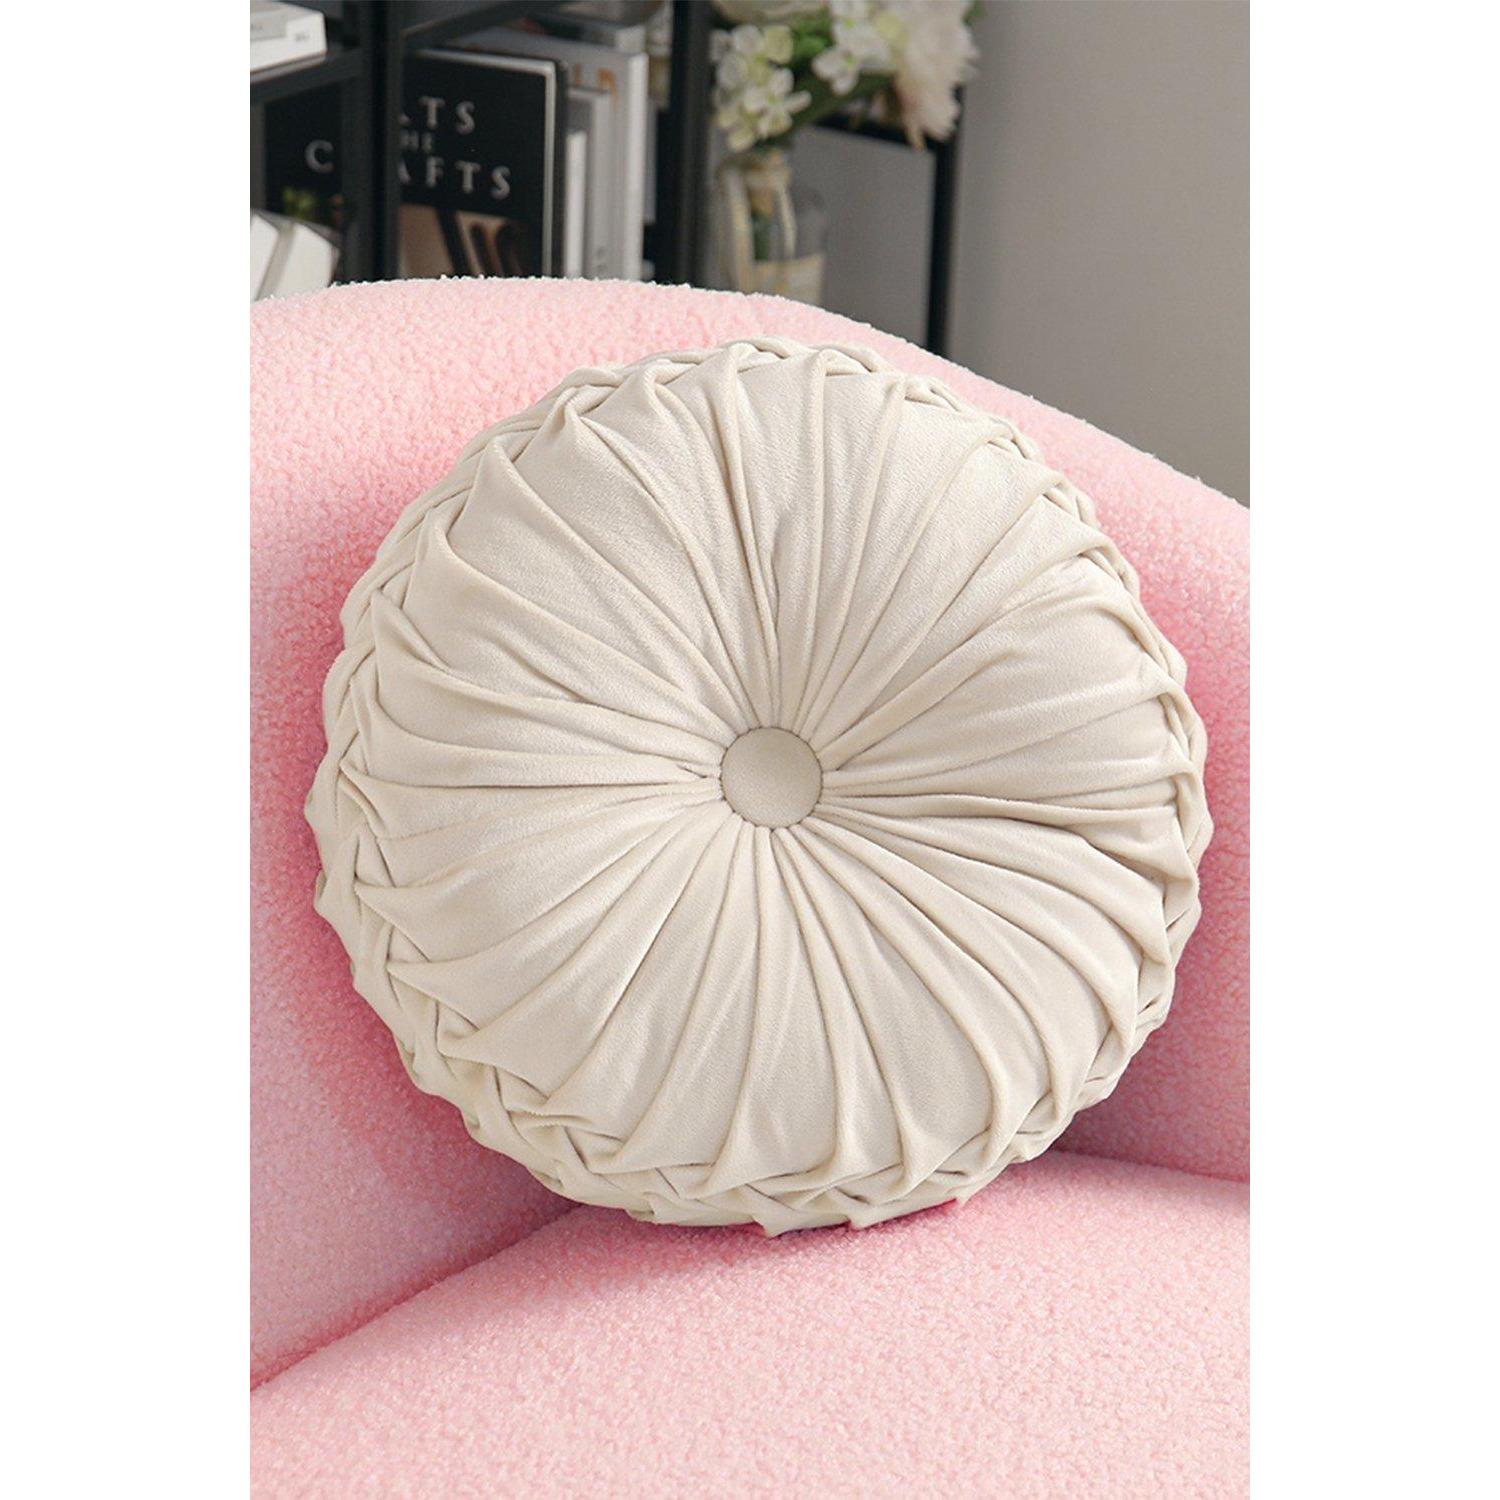 35cm Beige Round Velvet Pleated Pumpkin Throw Pillow - image 1